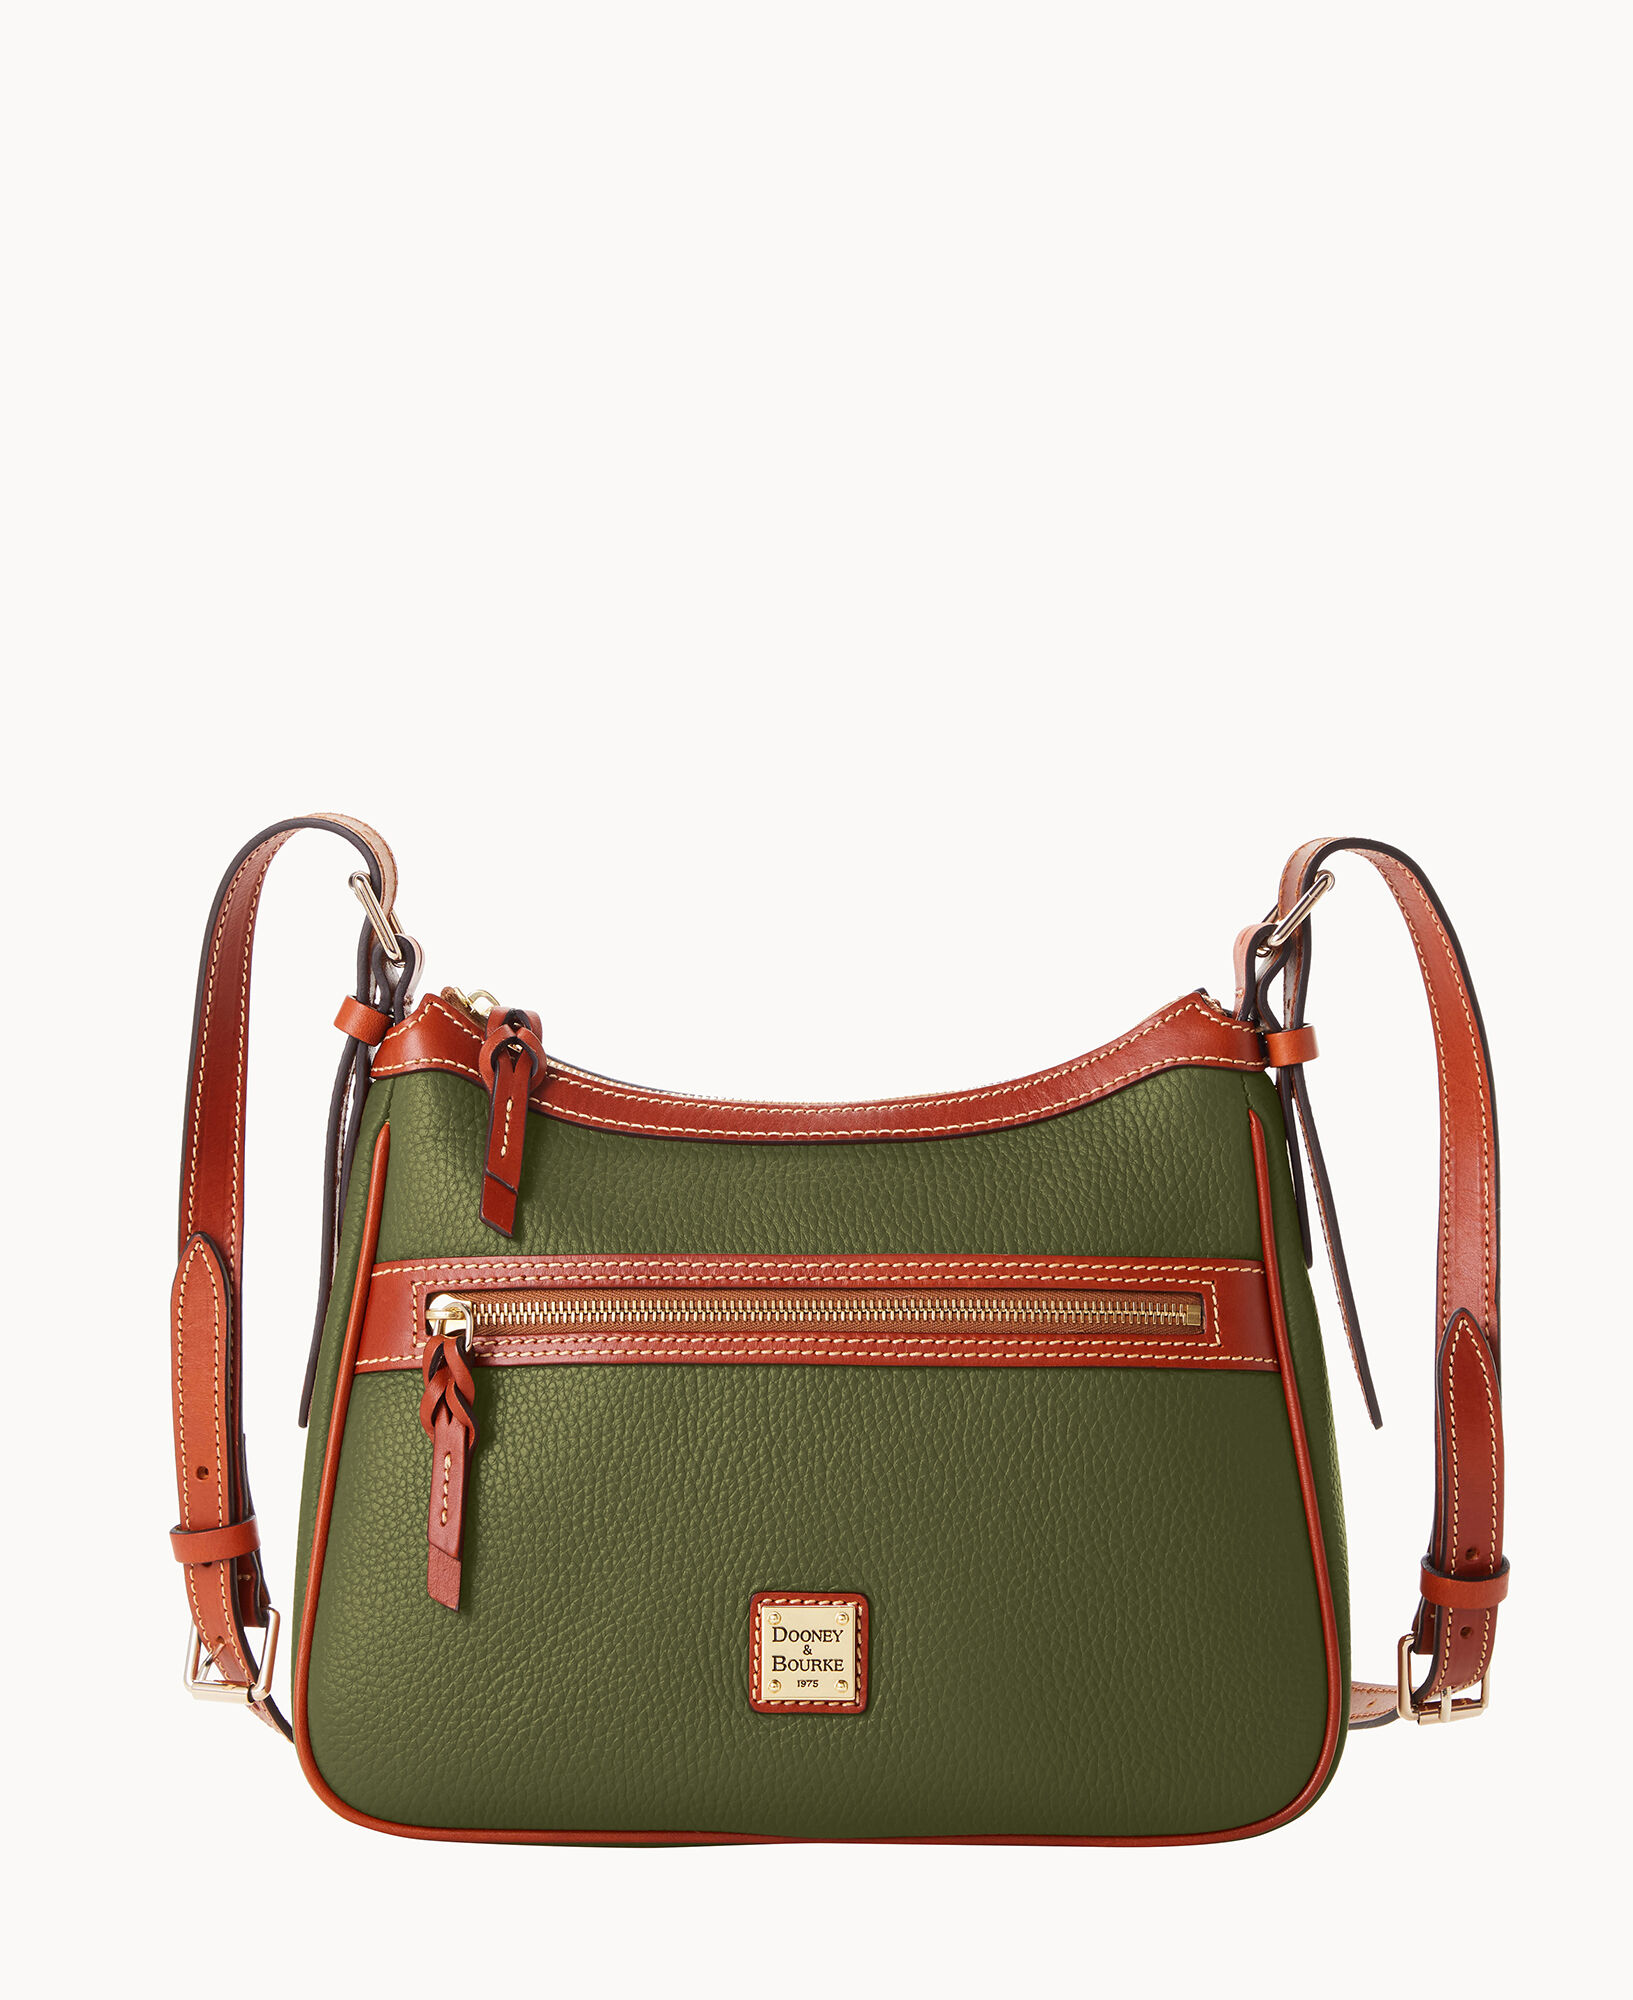 Dooney & Bourke Handbag, Pebble Grain Small Zip Satchel - Bark : Clothing,  Shoes & Jewelry 